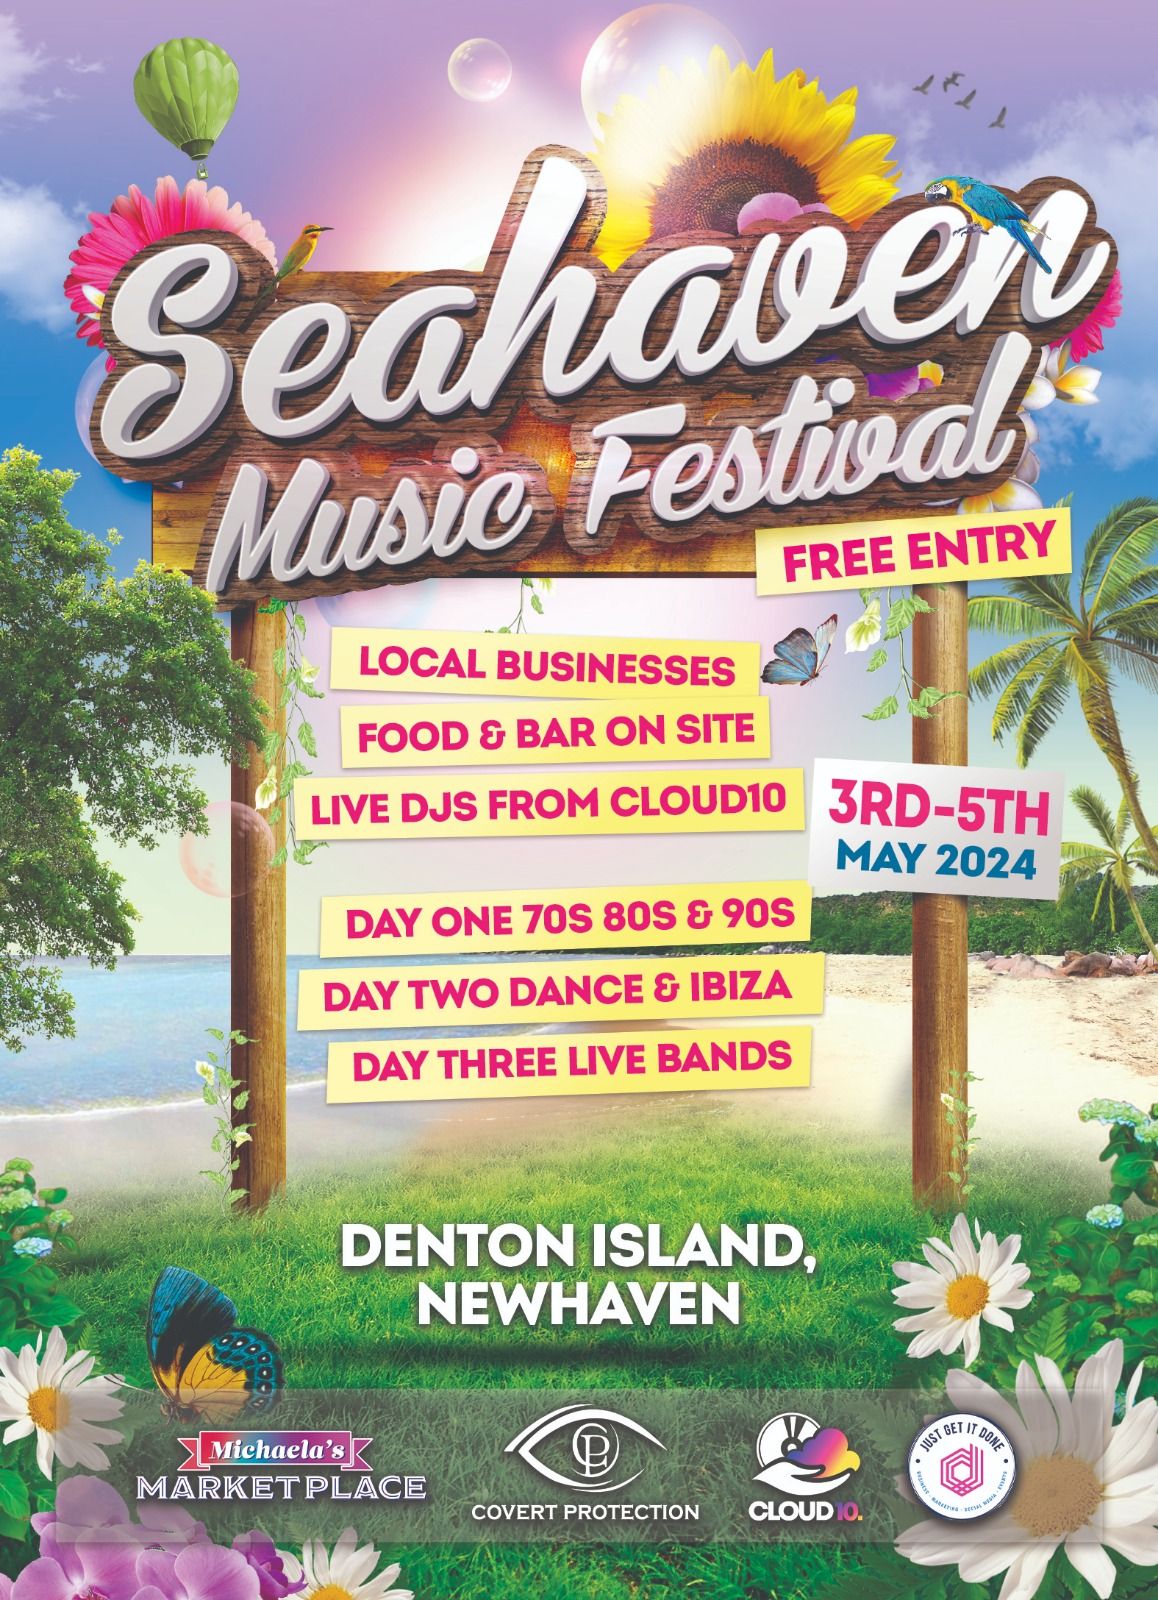 Seahaven Music Festival